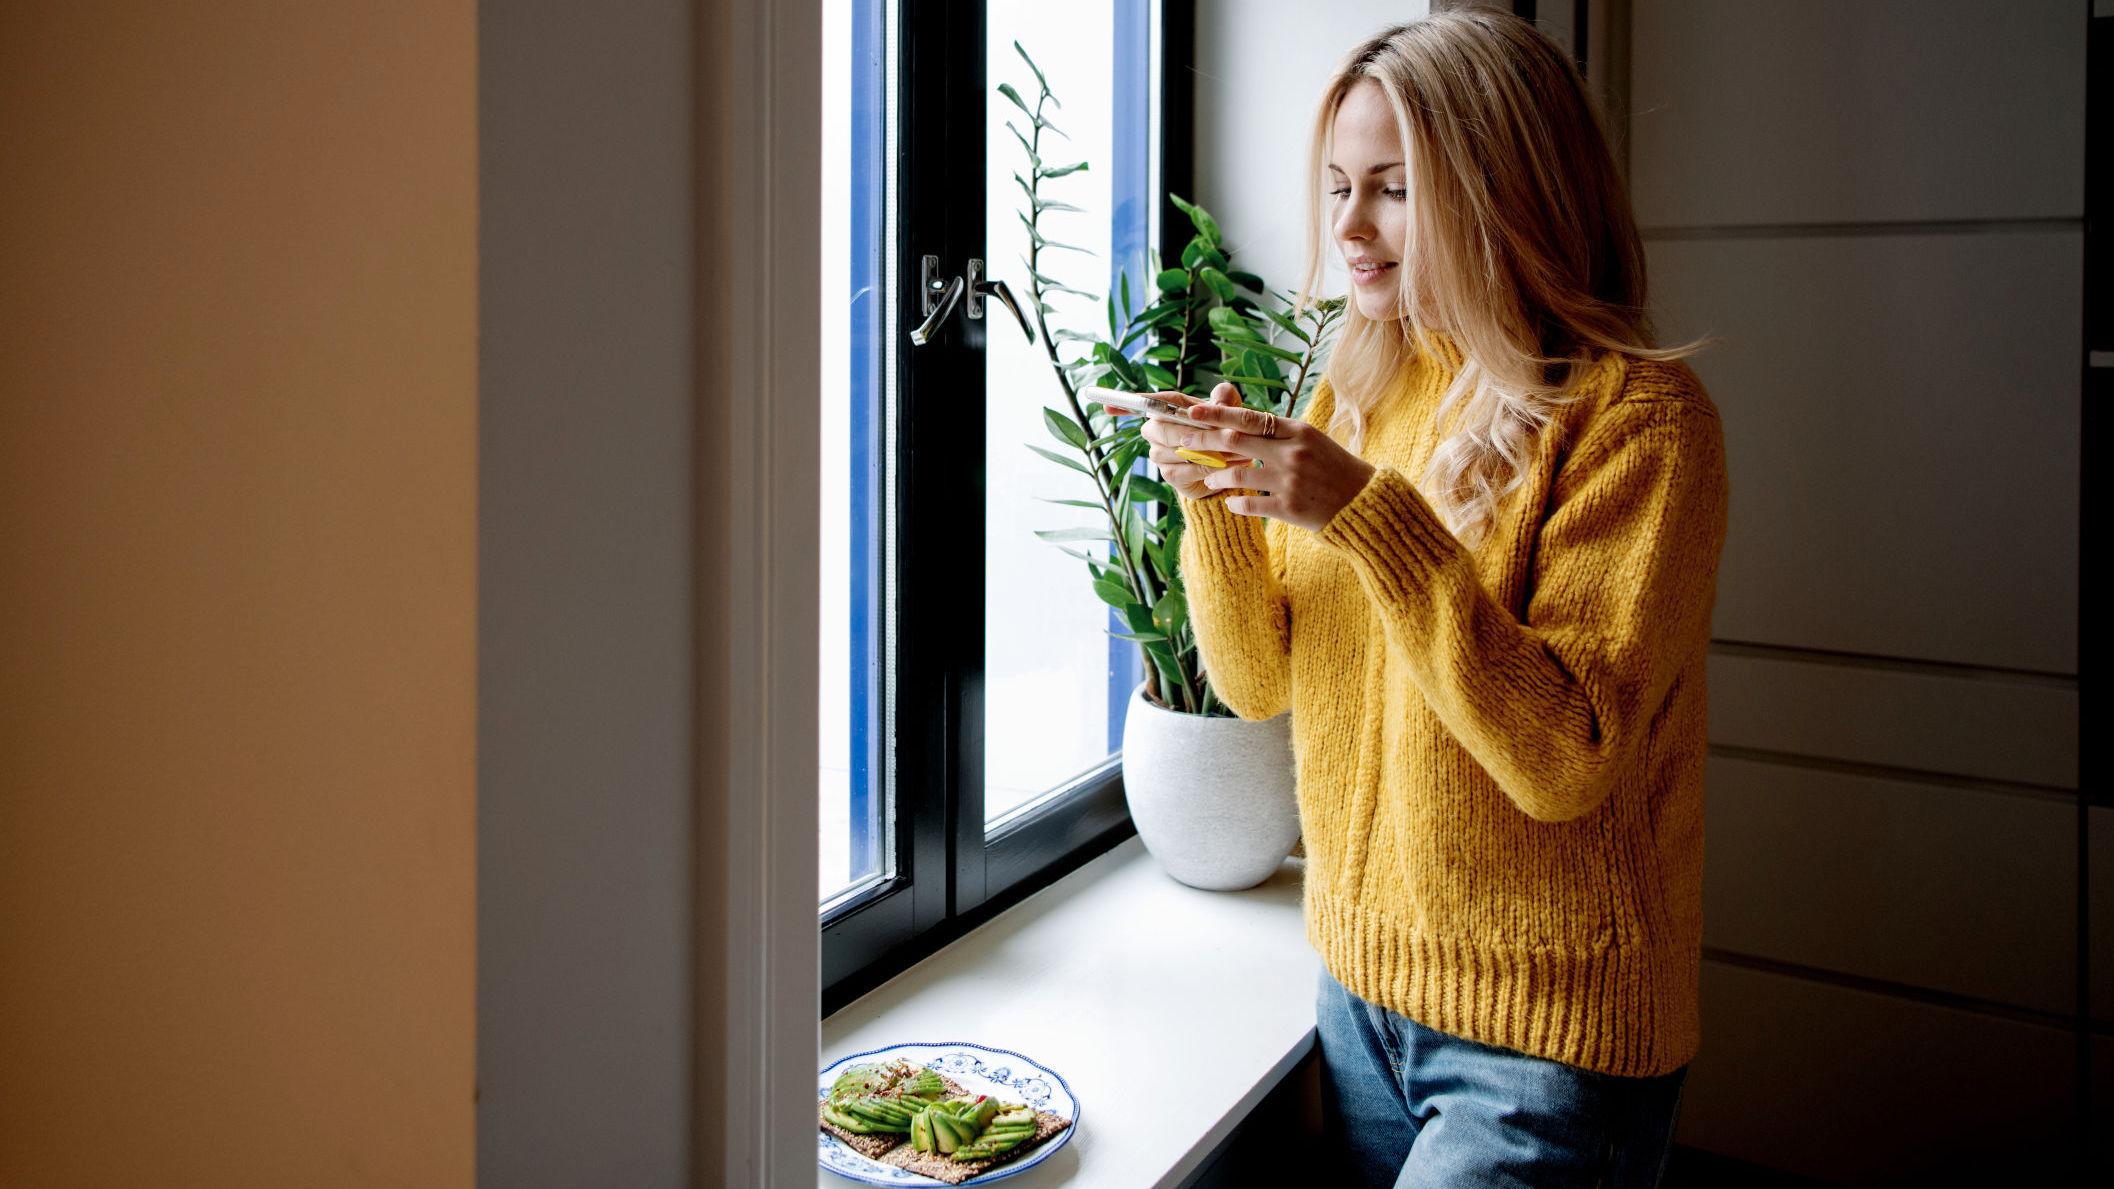 AVOKADOELSKER: Emilie Nerengs favorittingrediens er avokado. Her fra leiligheten i Oslo hvor hun tar bilder av en avokado-lunsj til Insta-kontoen sin. Foto: Line Møller/VG